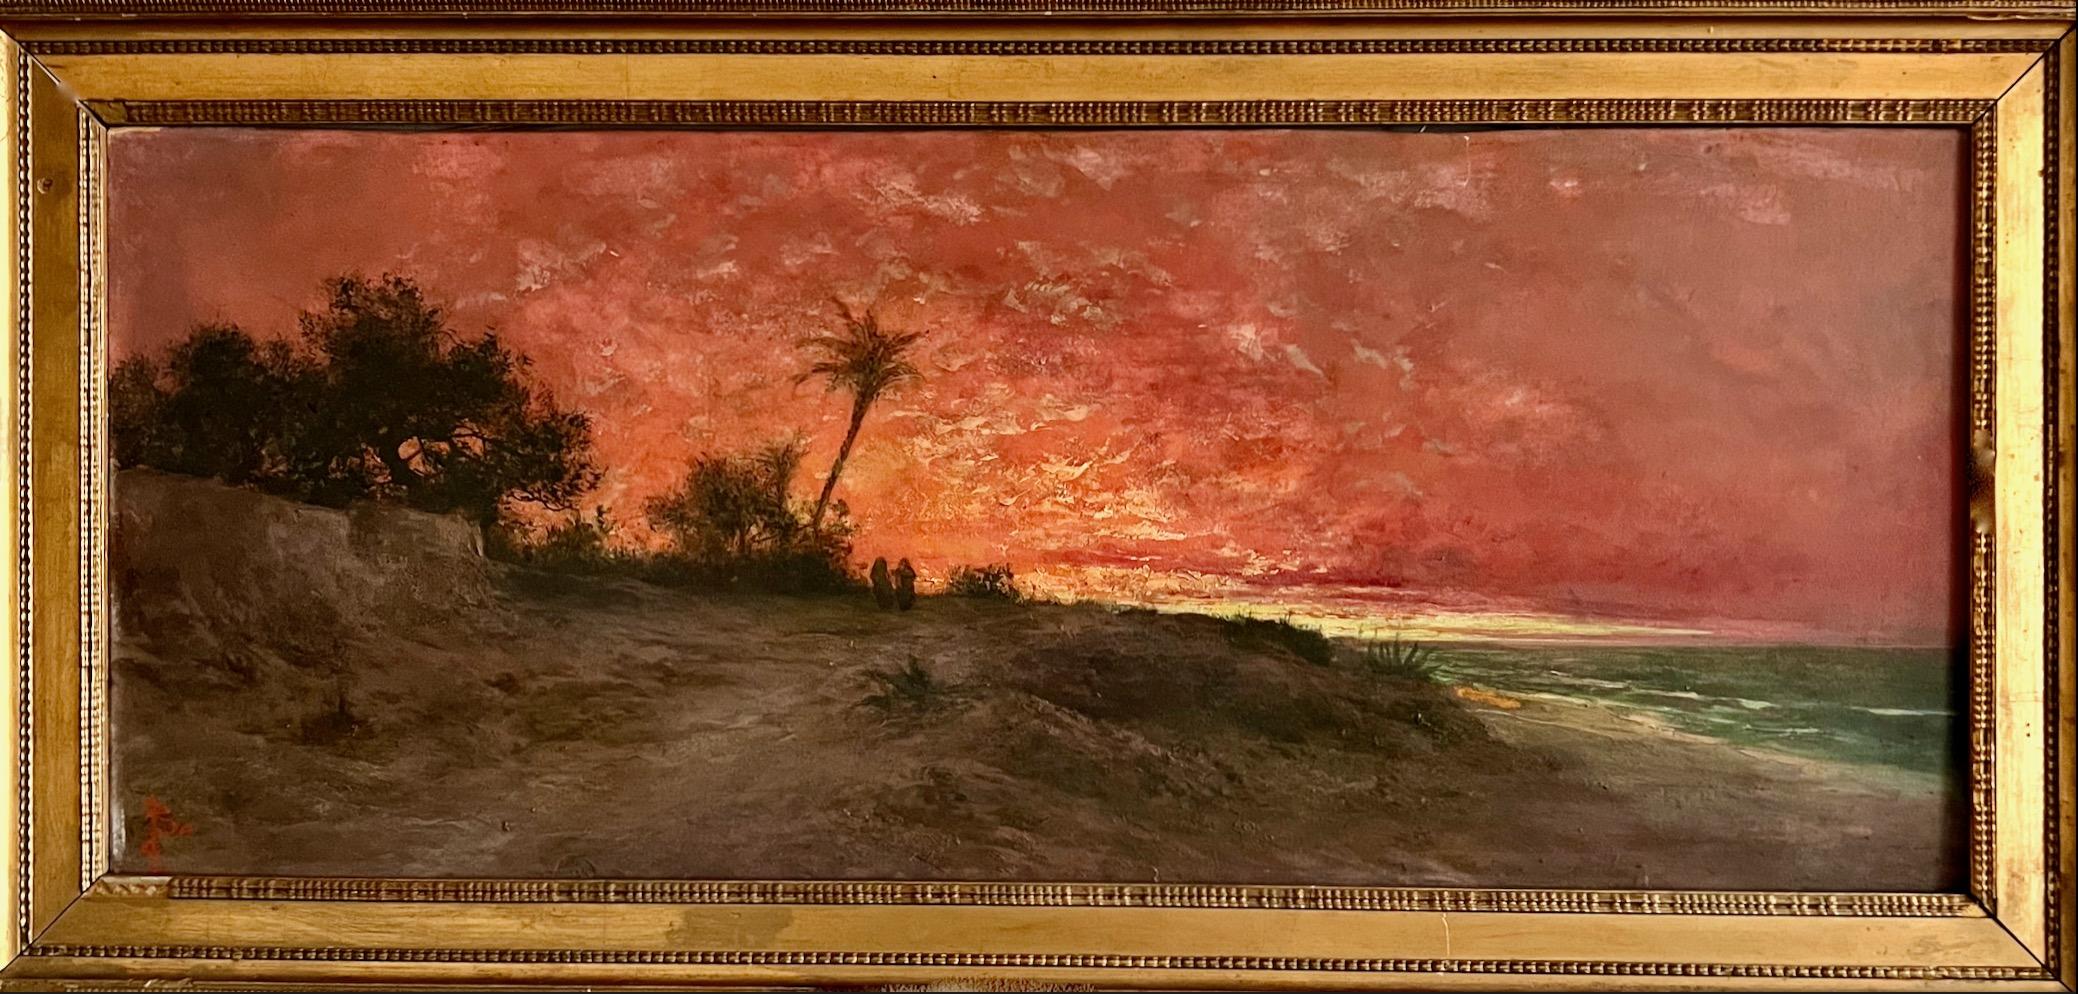 Sonnenuntergang in einer orientalischen Landschaft am Meer.  – Painting von Unknown